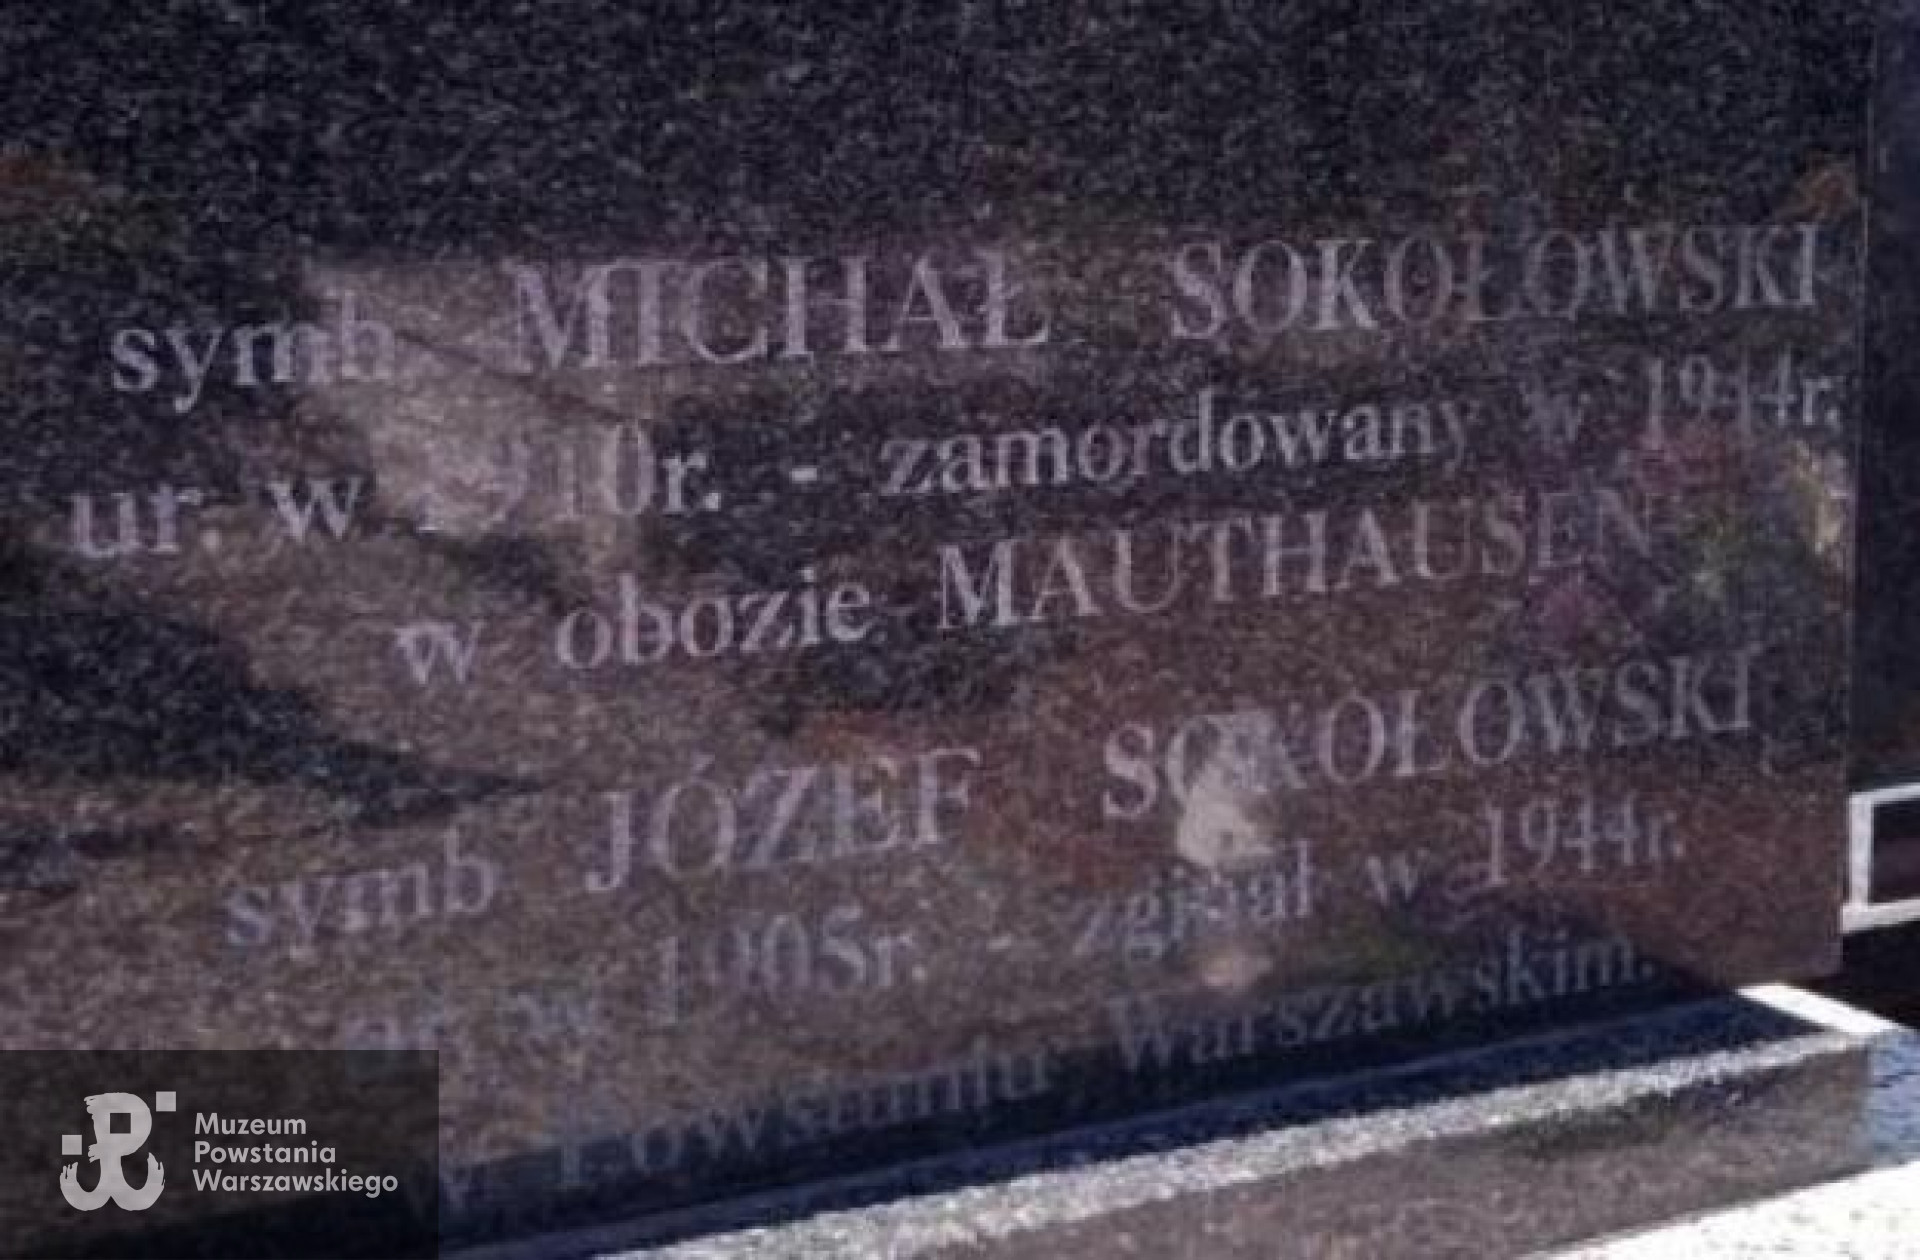 Mogiła symboliczna. Fot. tablicy epitafijnej udostępniła p. Zofia Sokołowska